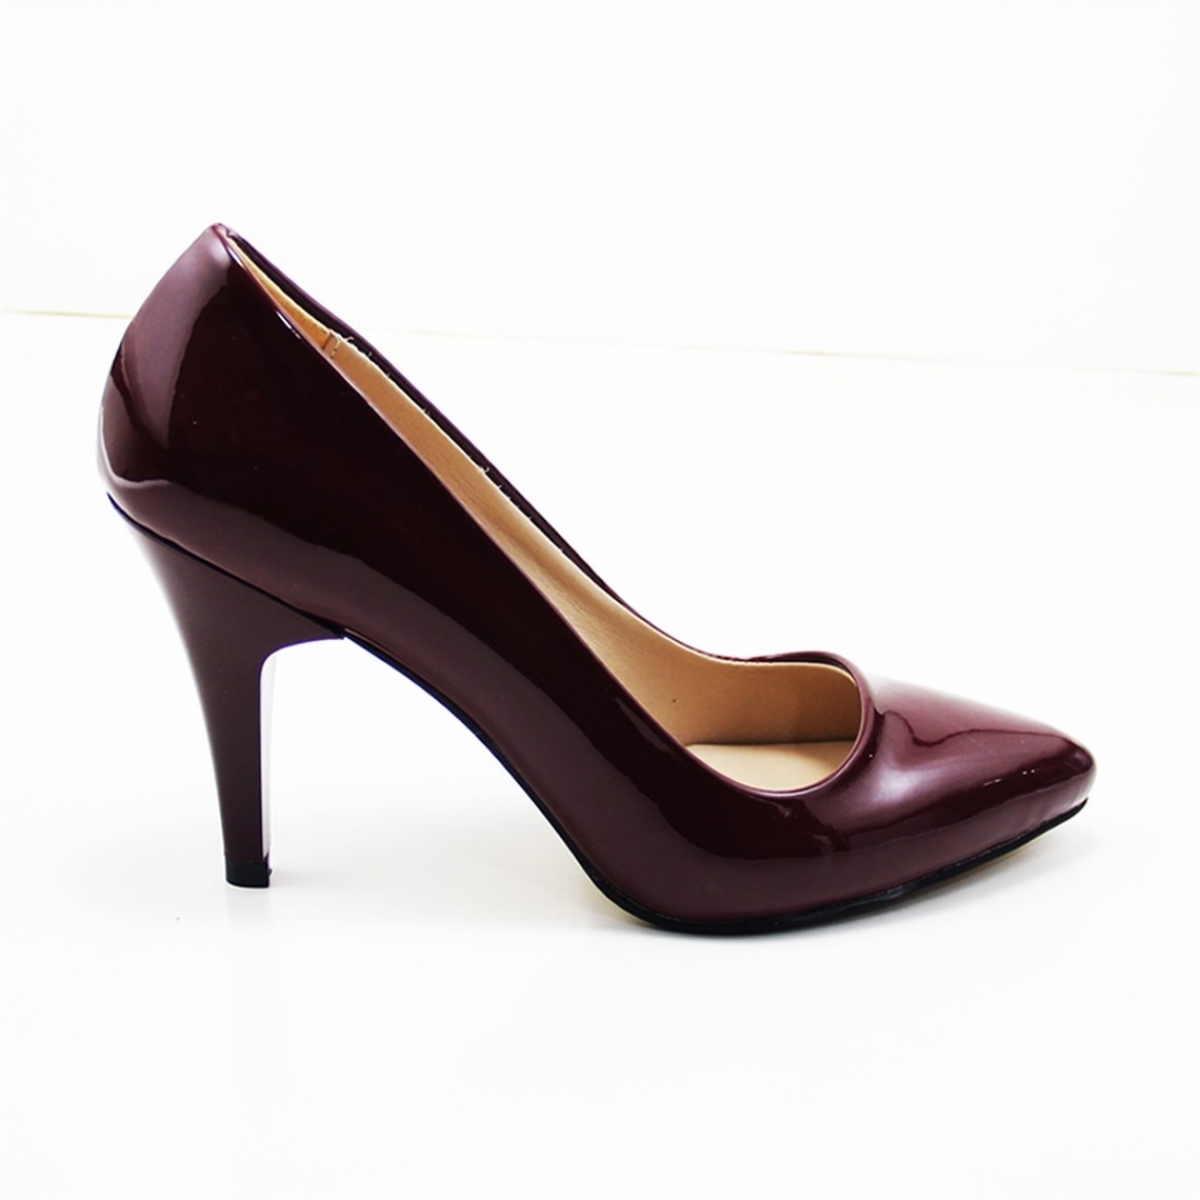 Flo Günlük Topuklu Bordo-Petekli Kadın Ayakkabı N-2500. 3